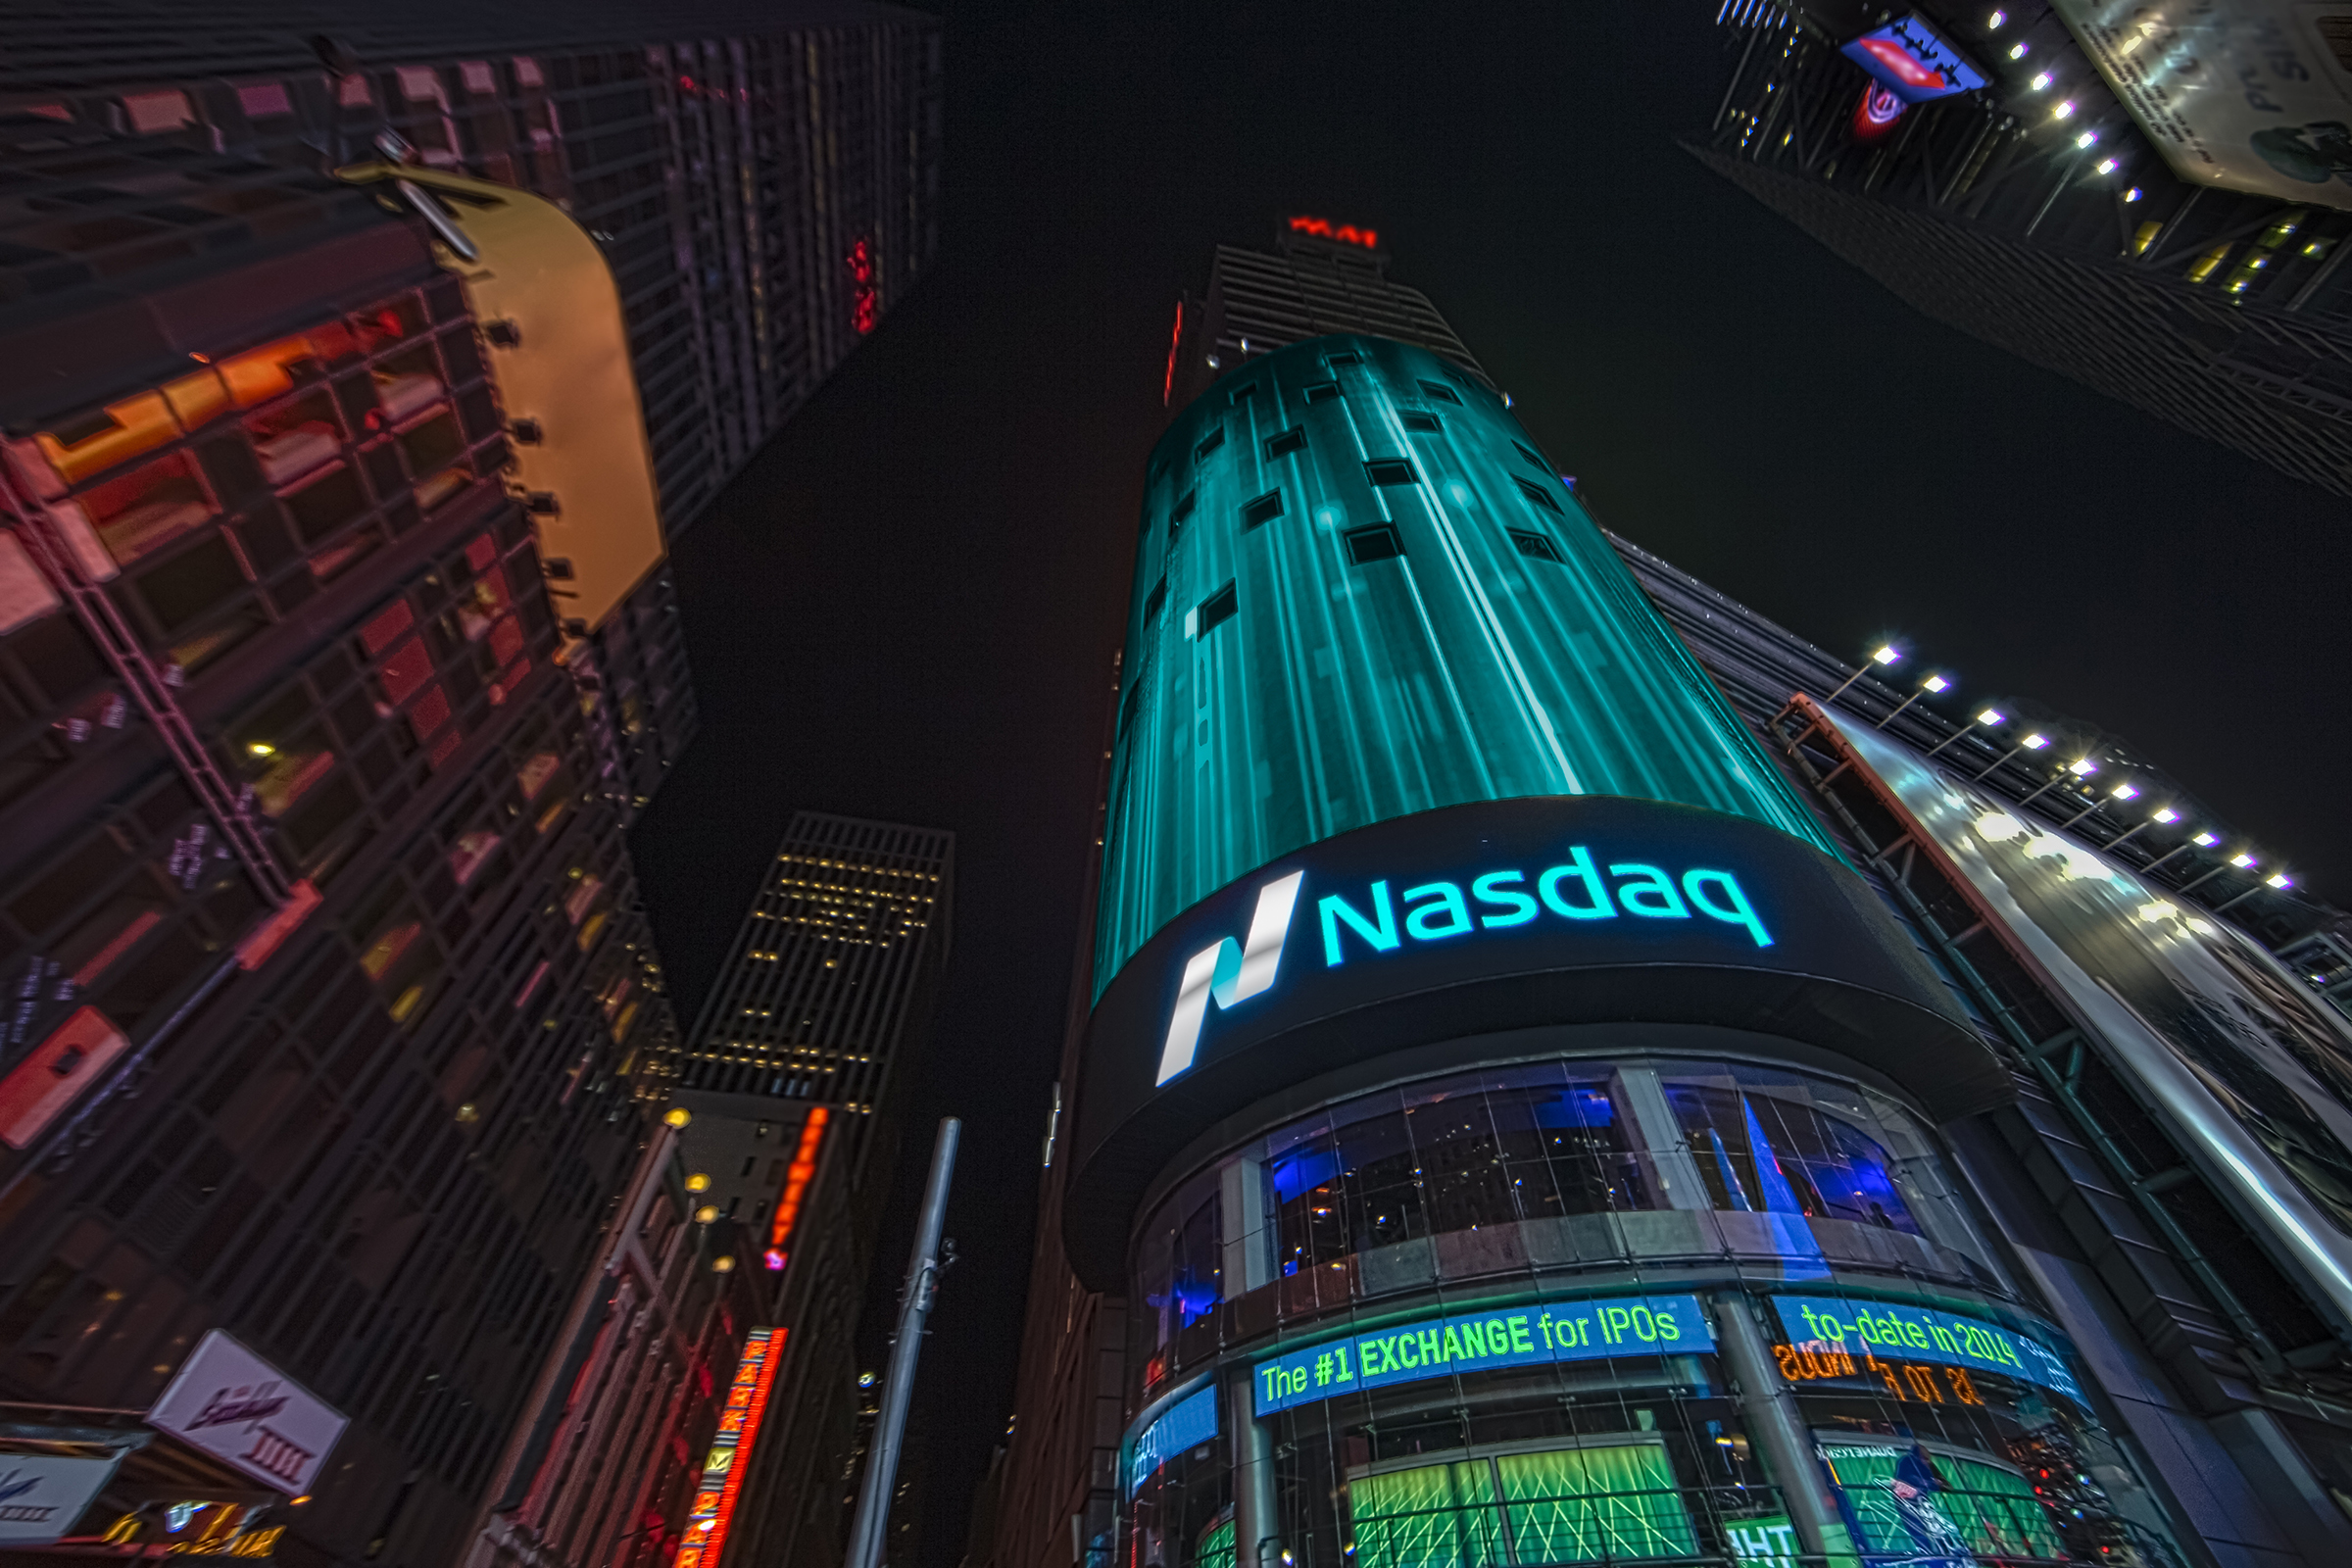 NASDAQ tower